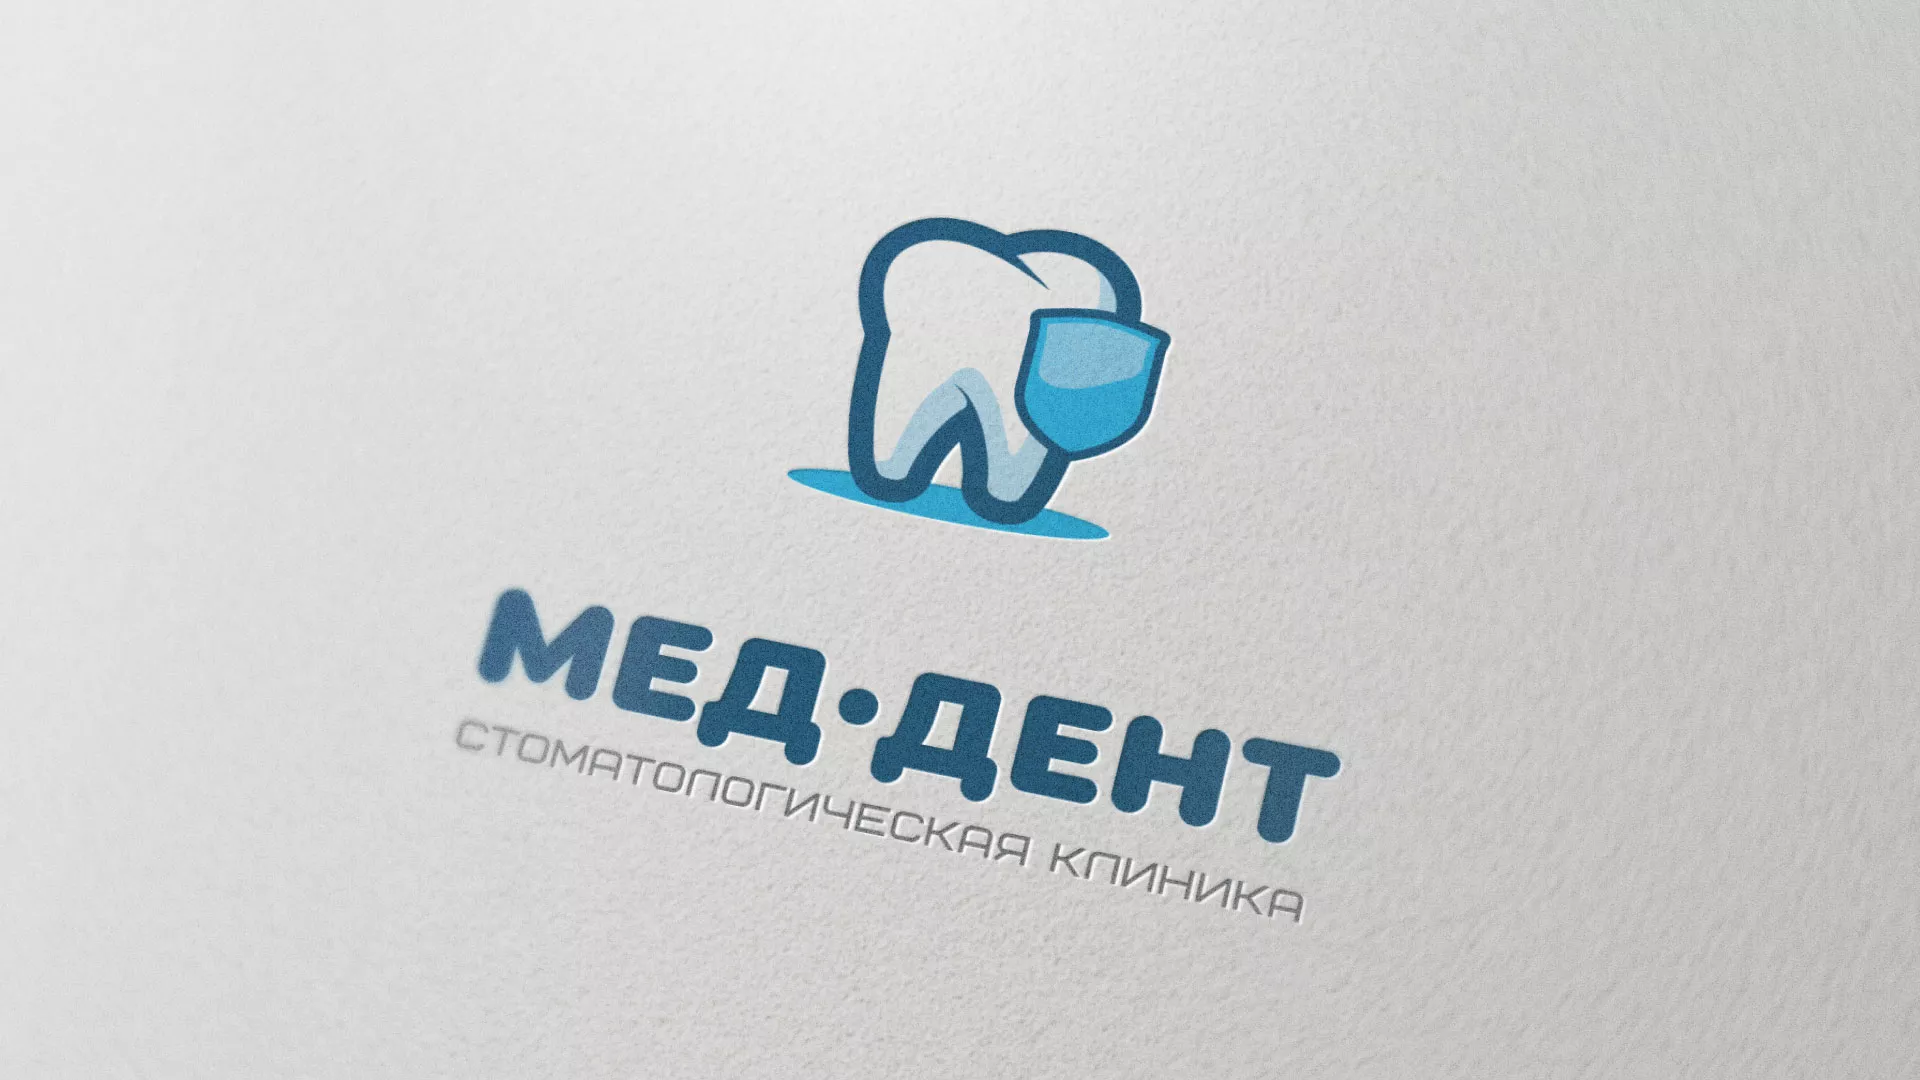 Разработка логотипа стоматологической клиники «МЕД-ДЕНТ» в Кондопоге